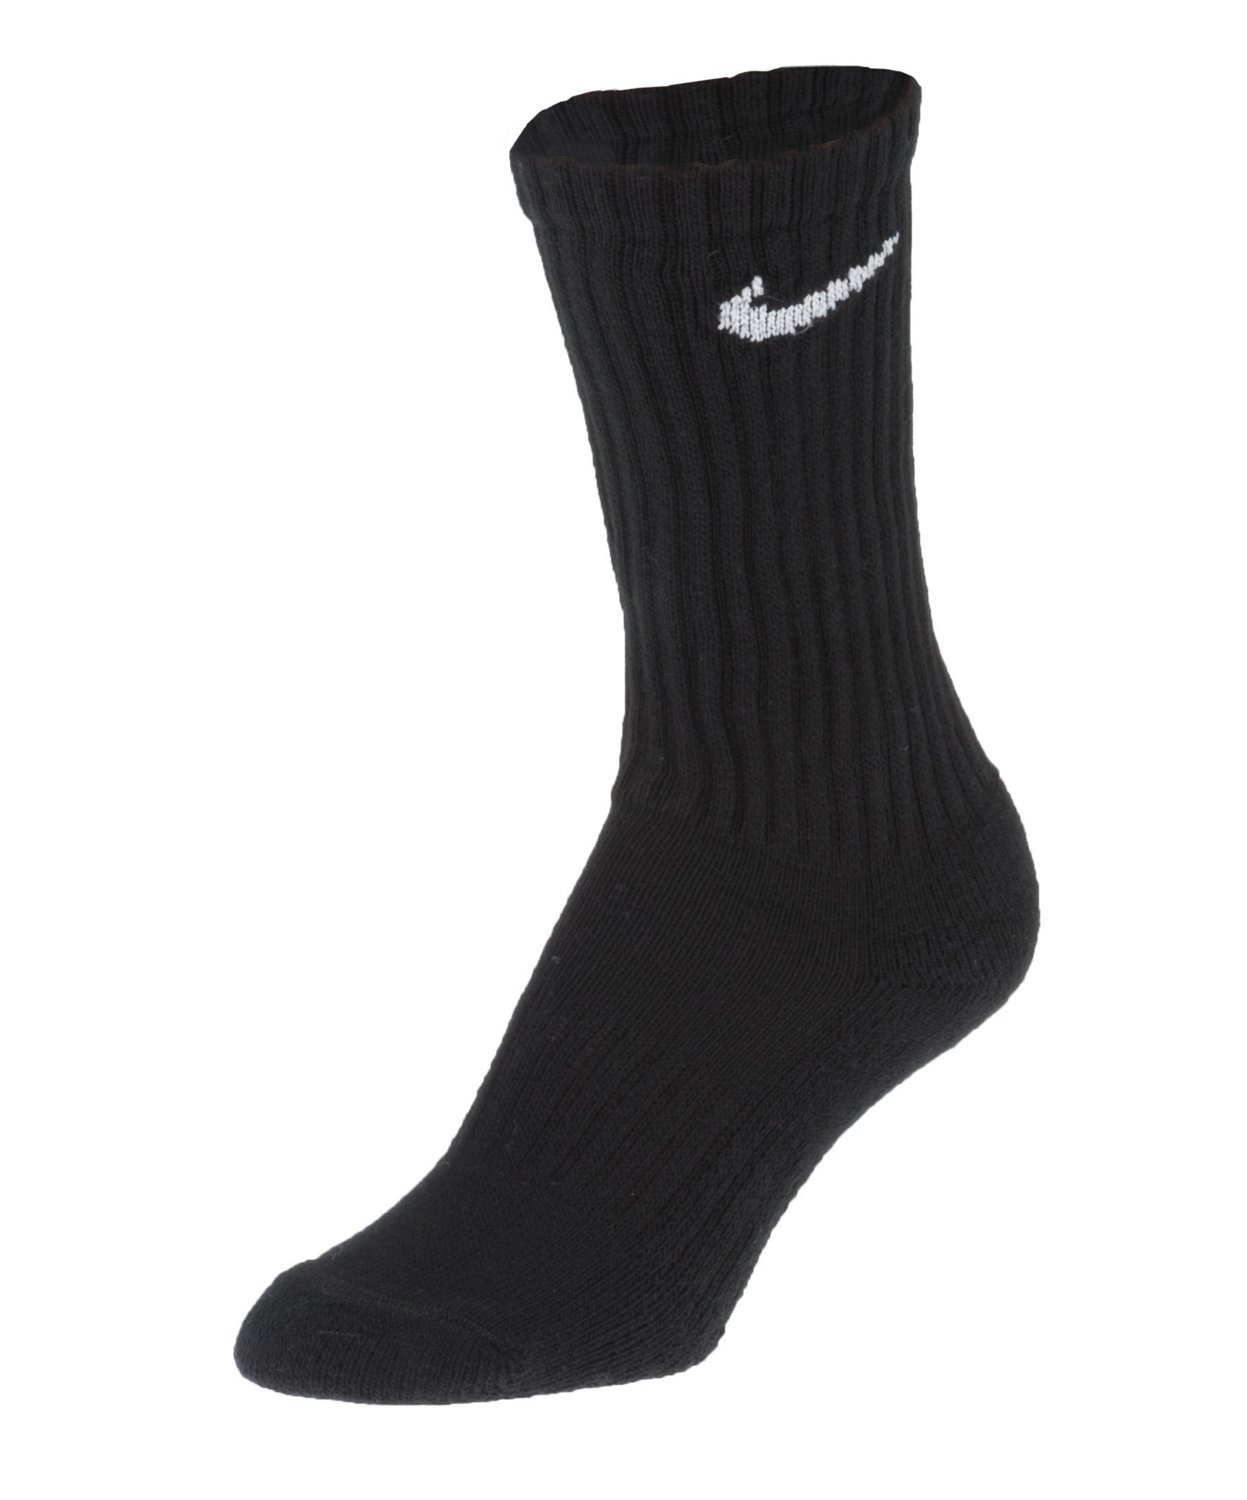 Nikes Socks